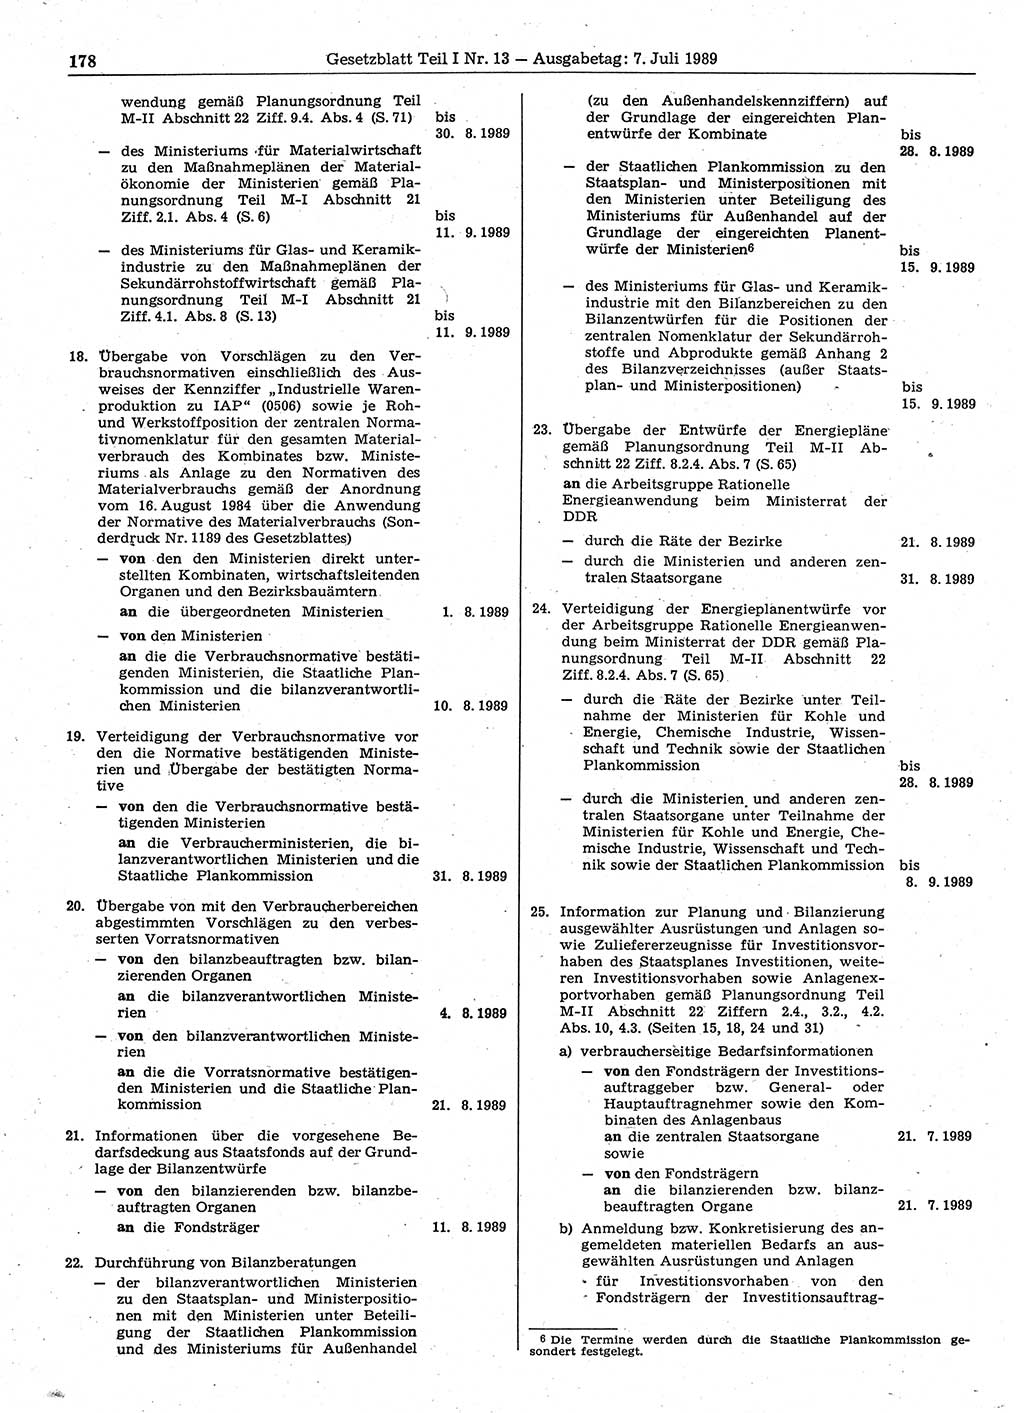 Gesetzblatt (GBl.) der Deutschen Demokratischen Republik (DDR) Teil Ⅰ 1989, Seite 178 (GBl. DDR Ⅰ 1989, S. 178)